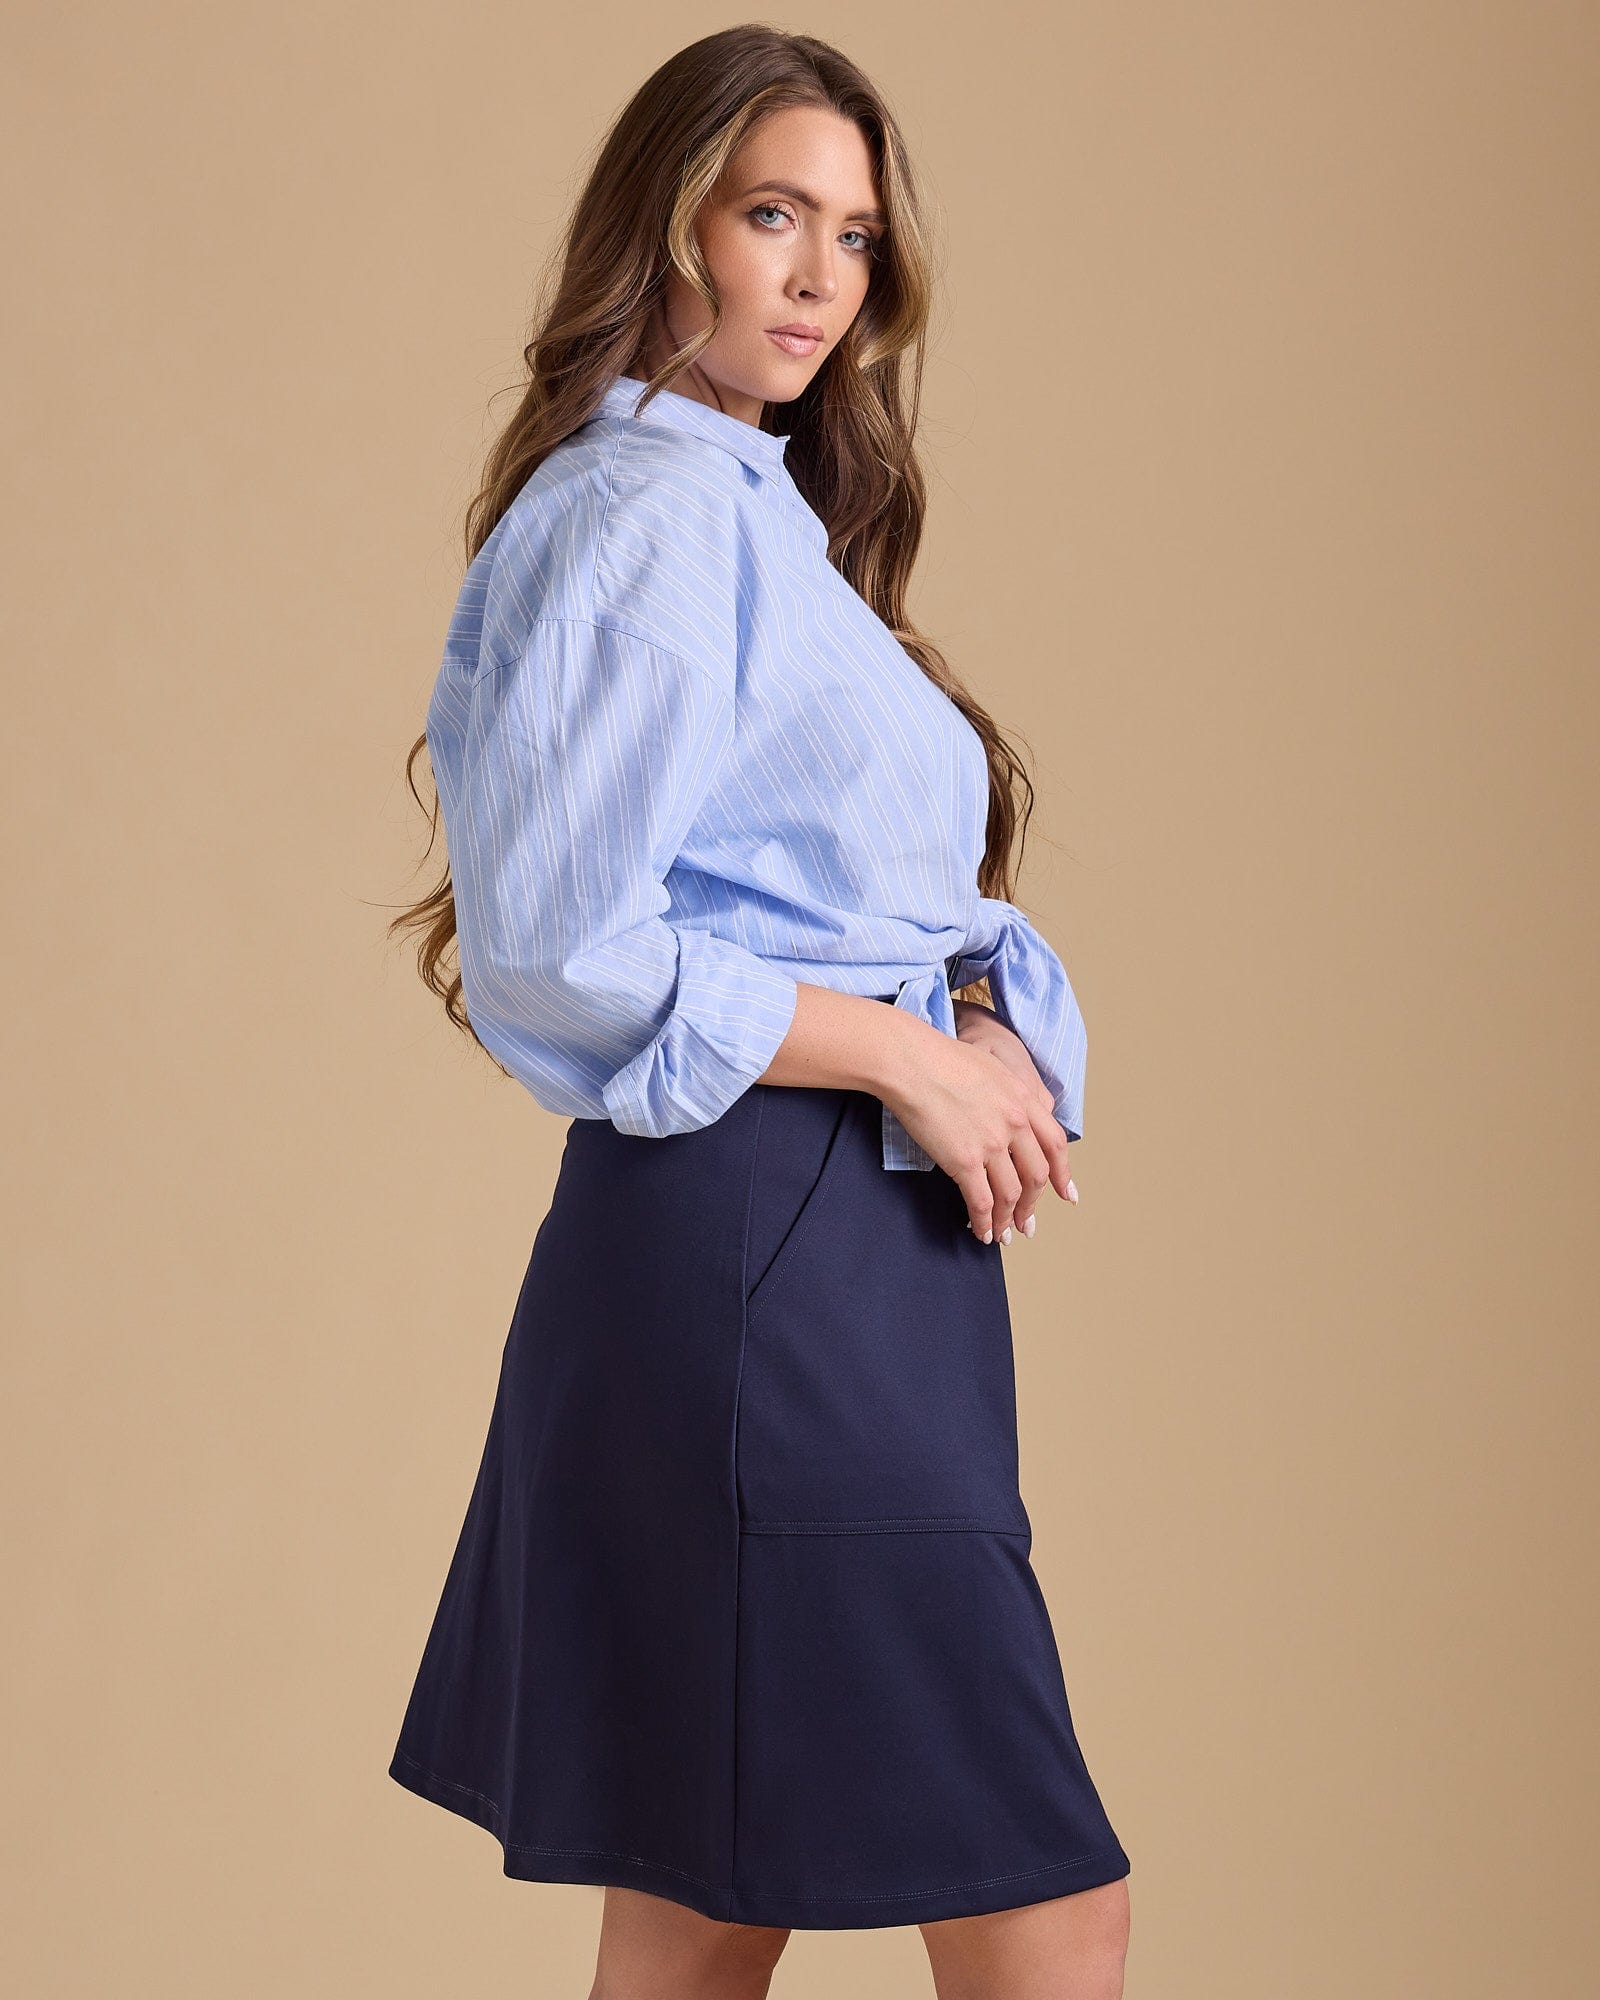 Woman in blue, buttondown skirt